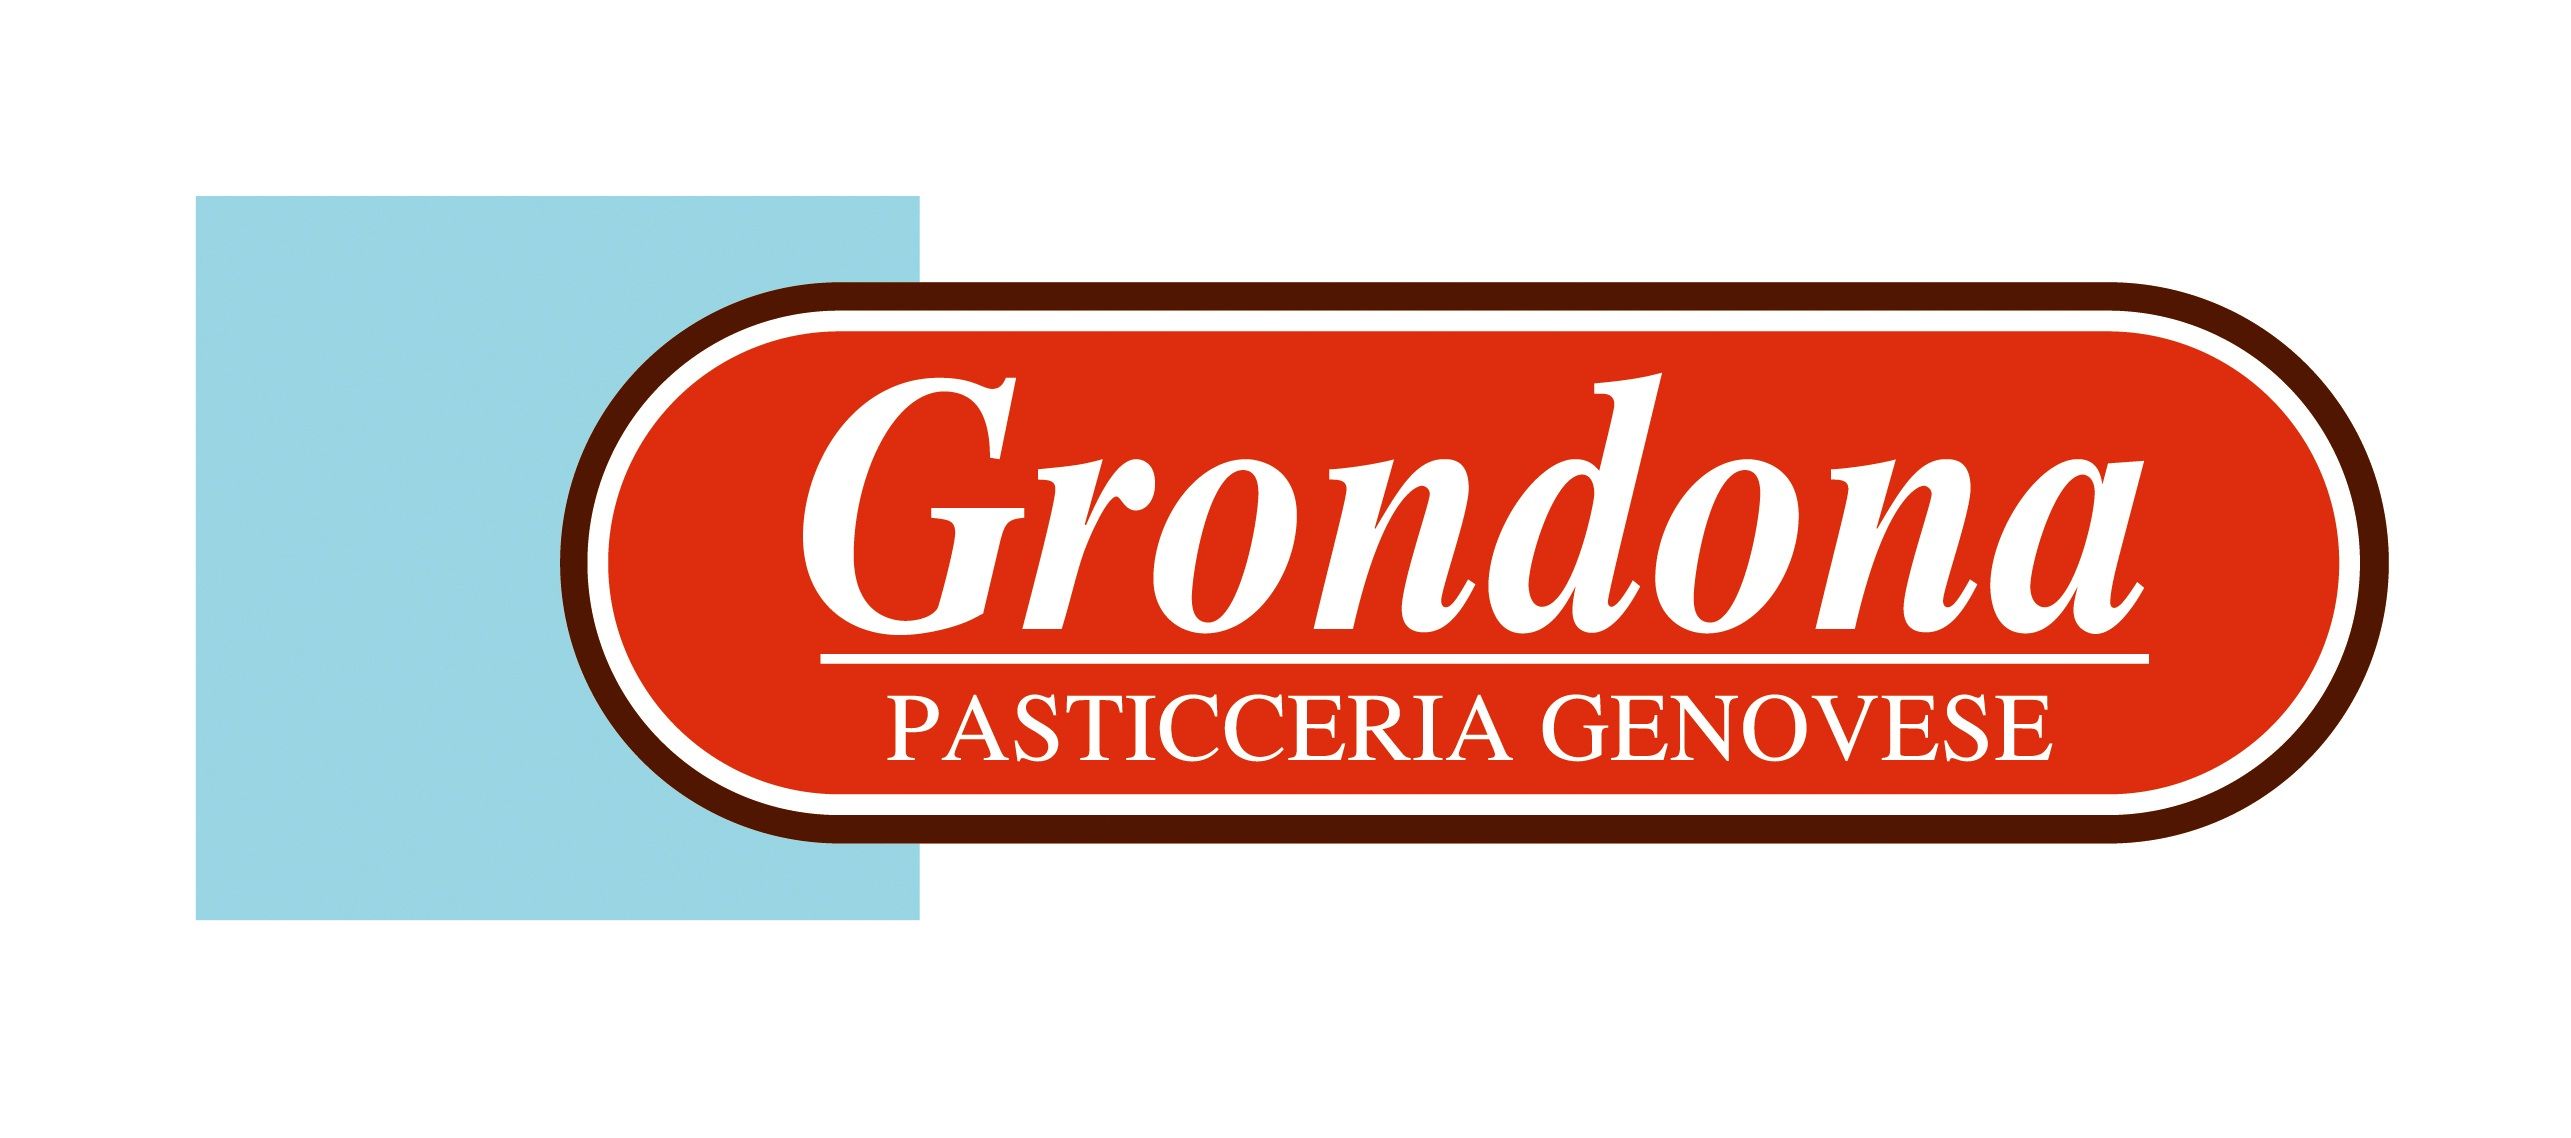 Sponsor Cus Genova Golf Grondona Pasticceria Genovese